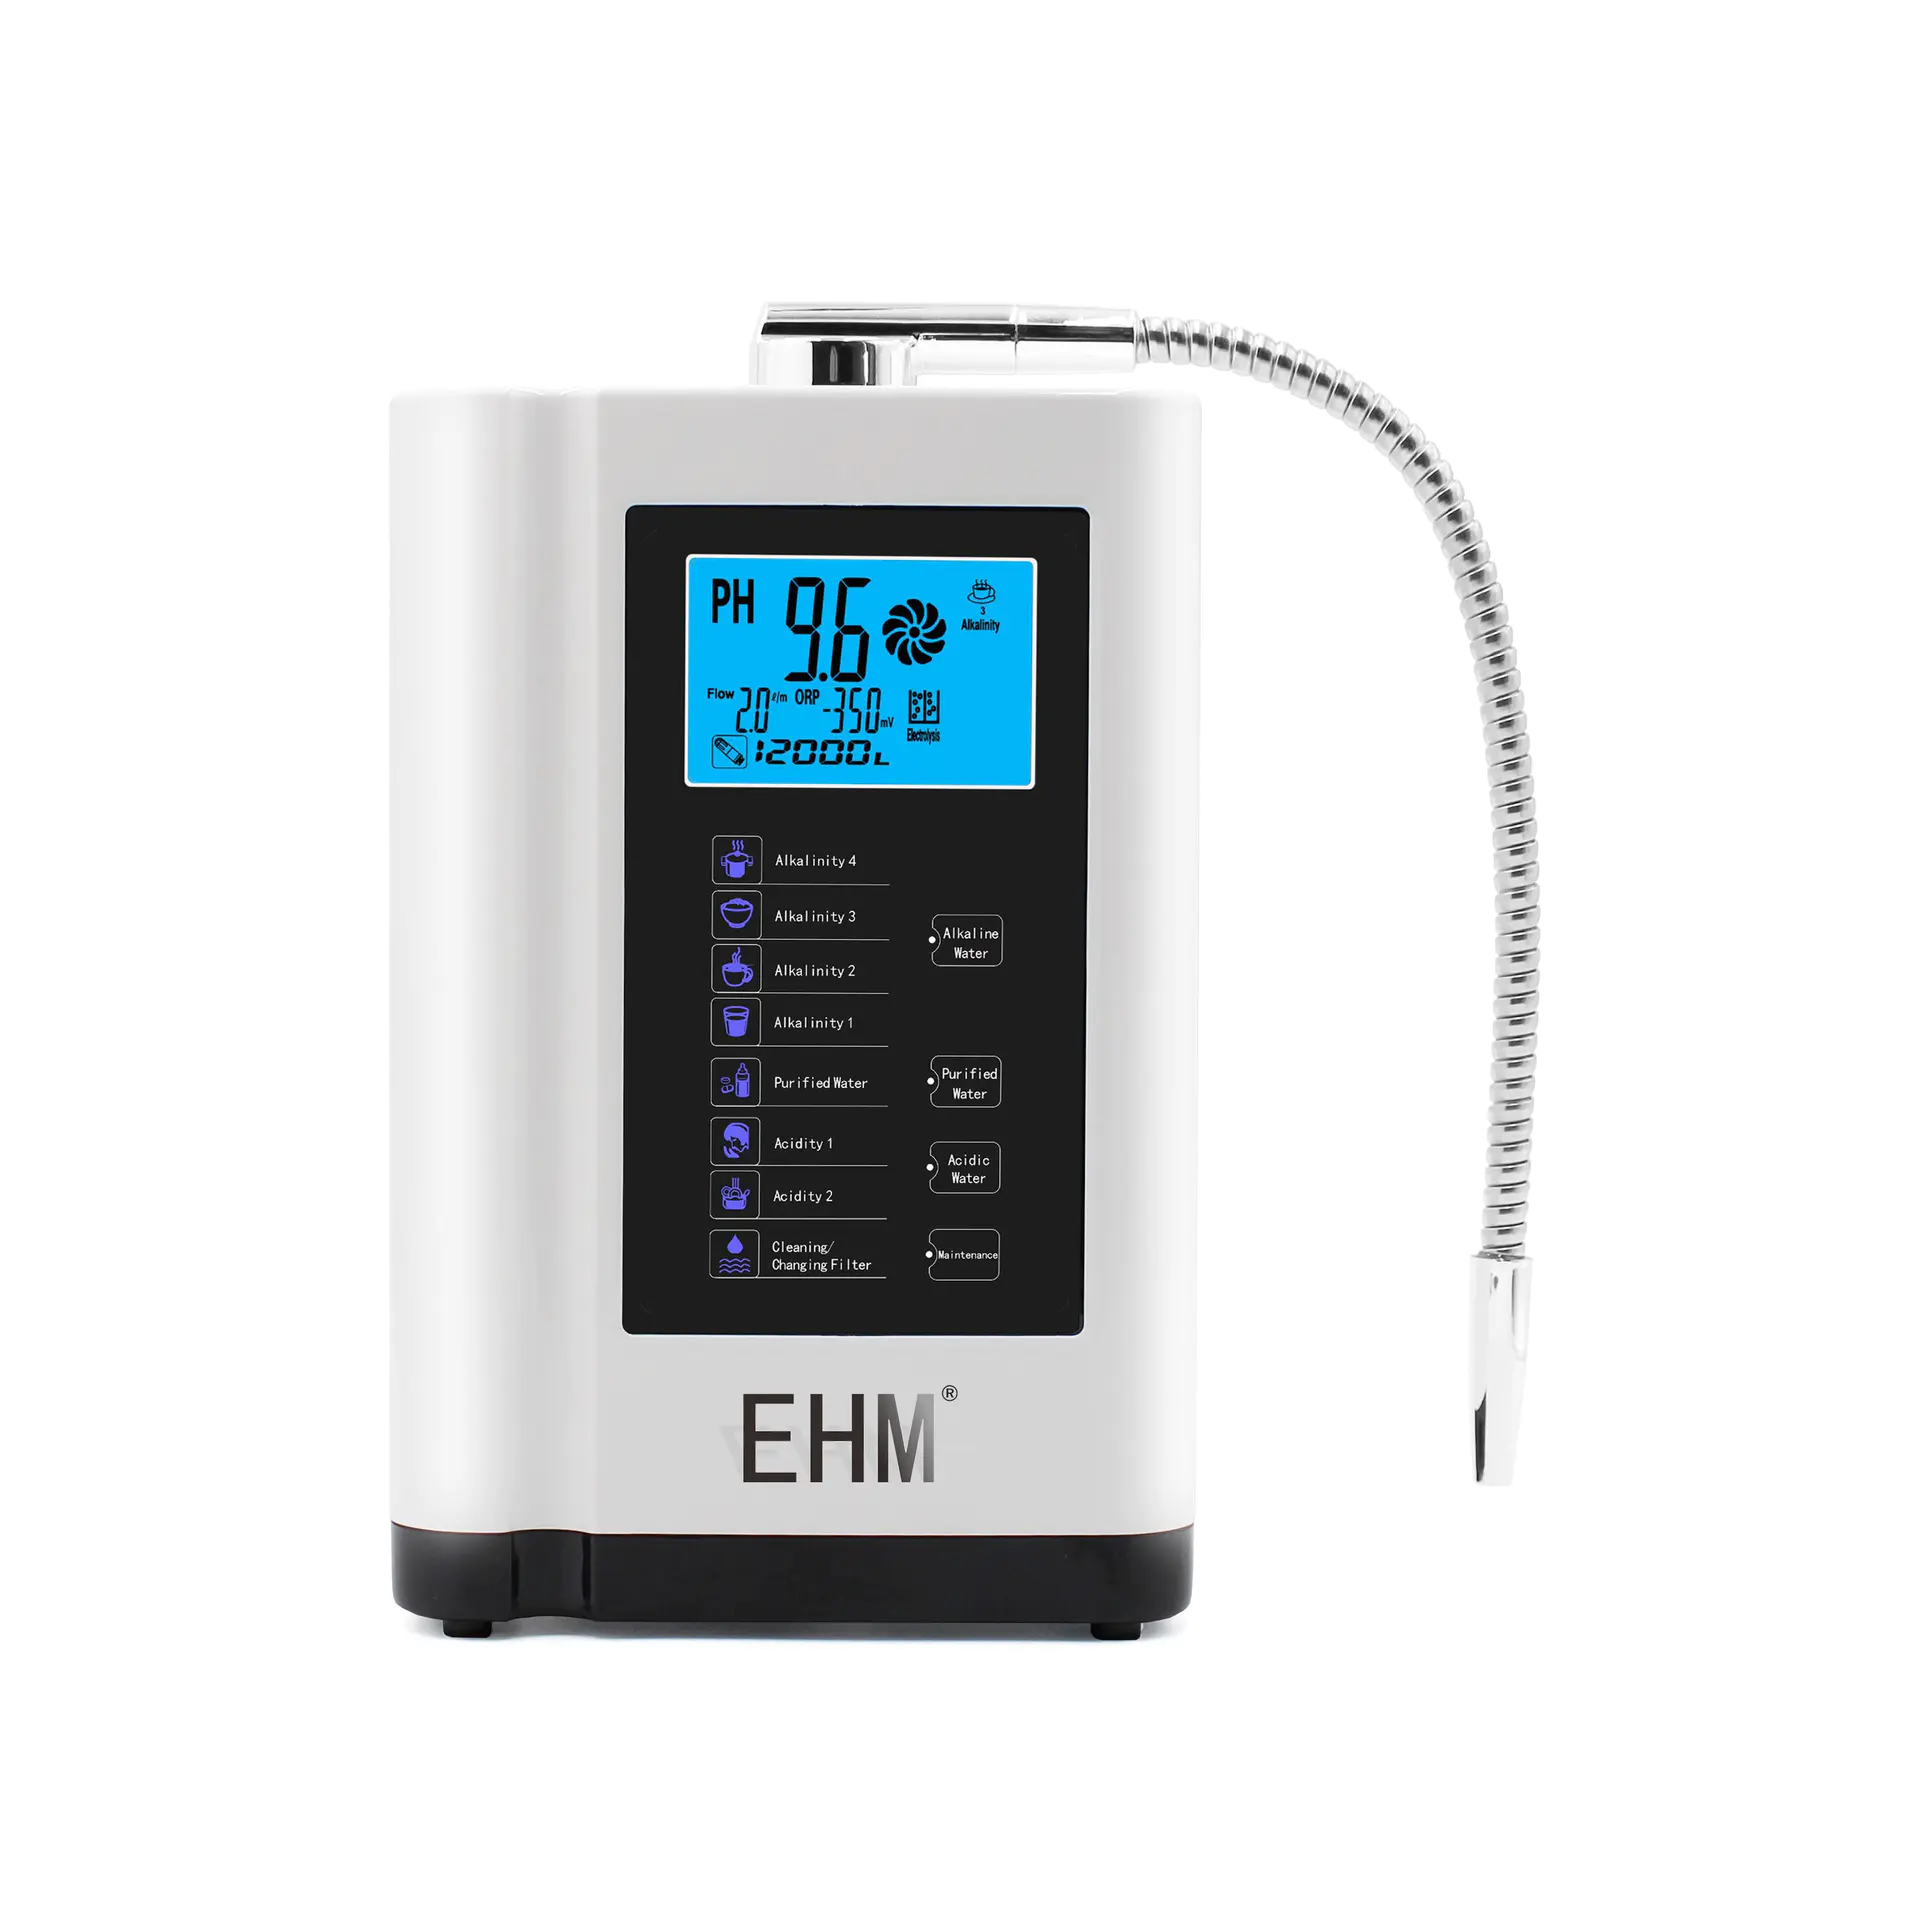 EHM -729 water ionizer